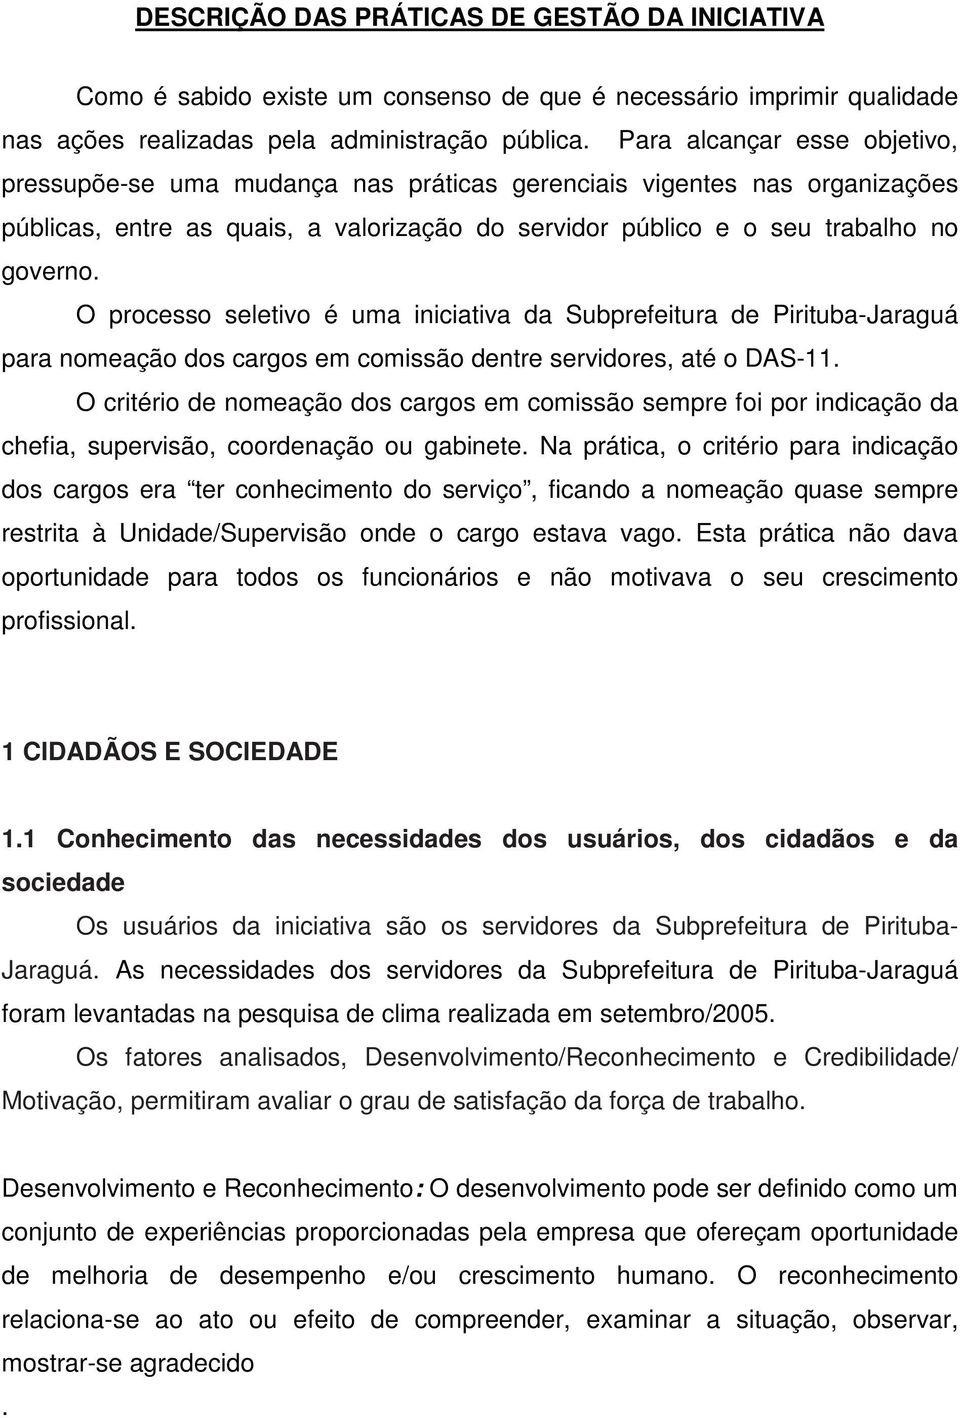 O processo seletivo é uma iniciativa da Subprefeitura de Pirituba-Jaraguá para nomeação dos cargos em comissão dentre servidores, até o DAS-11.